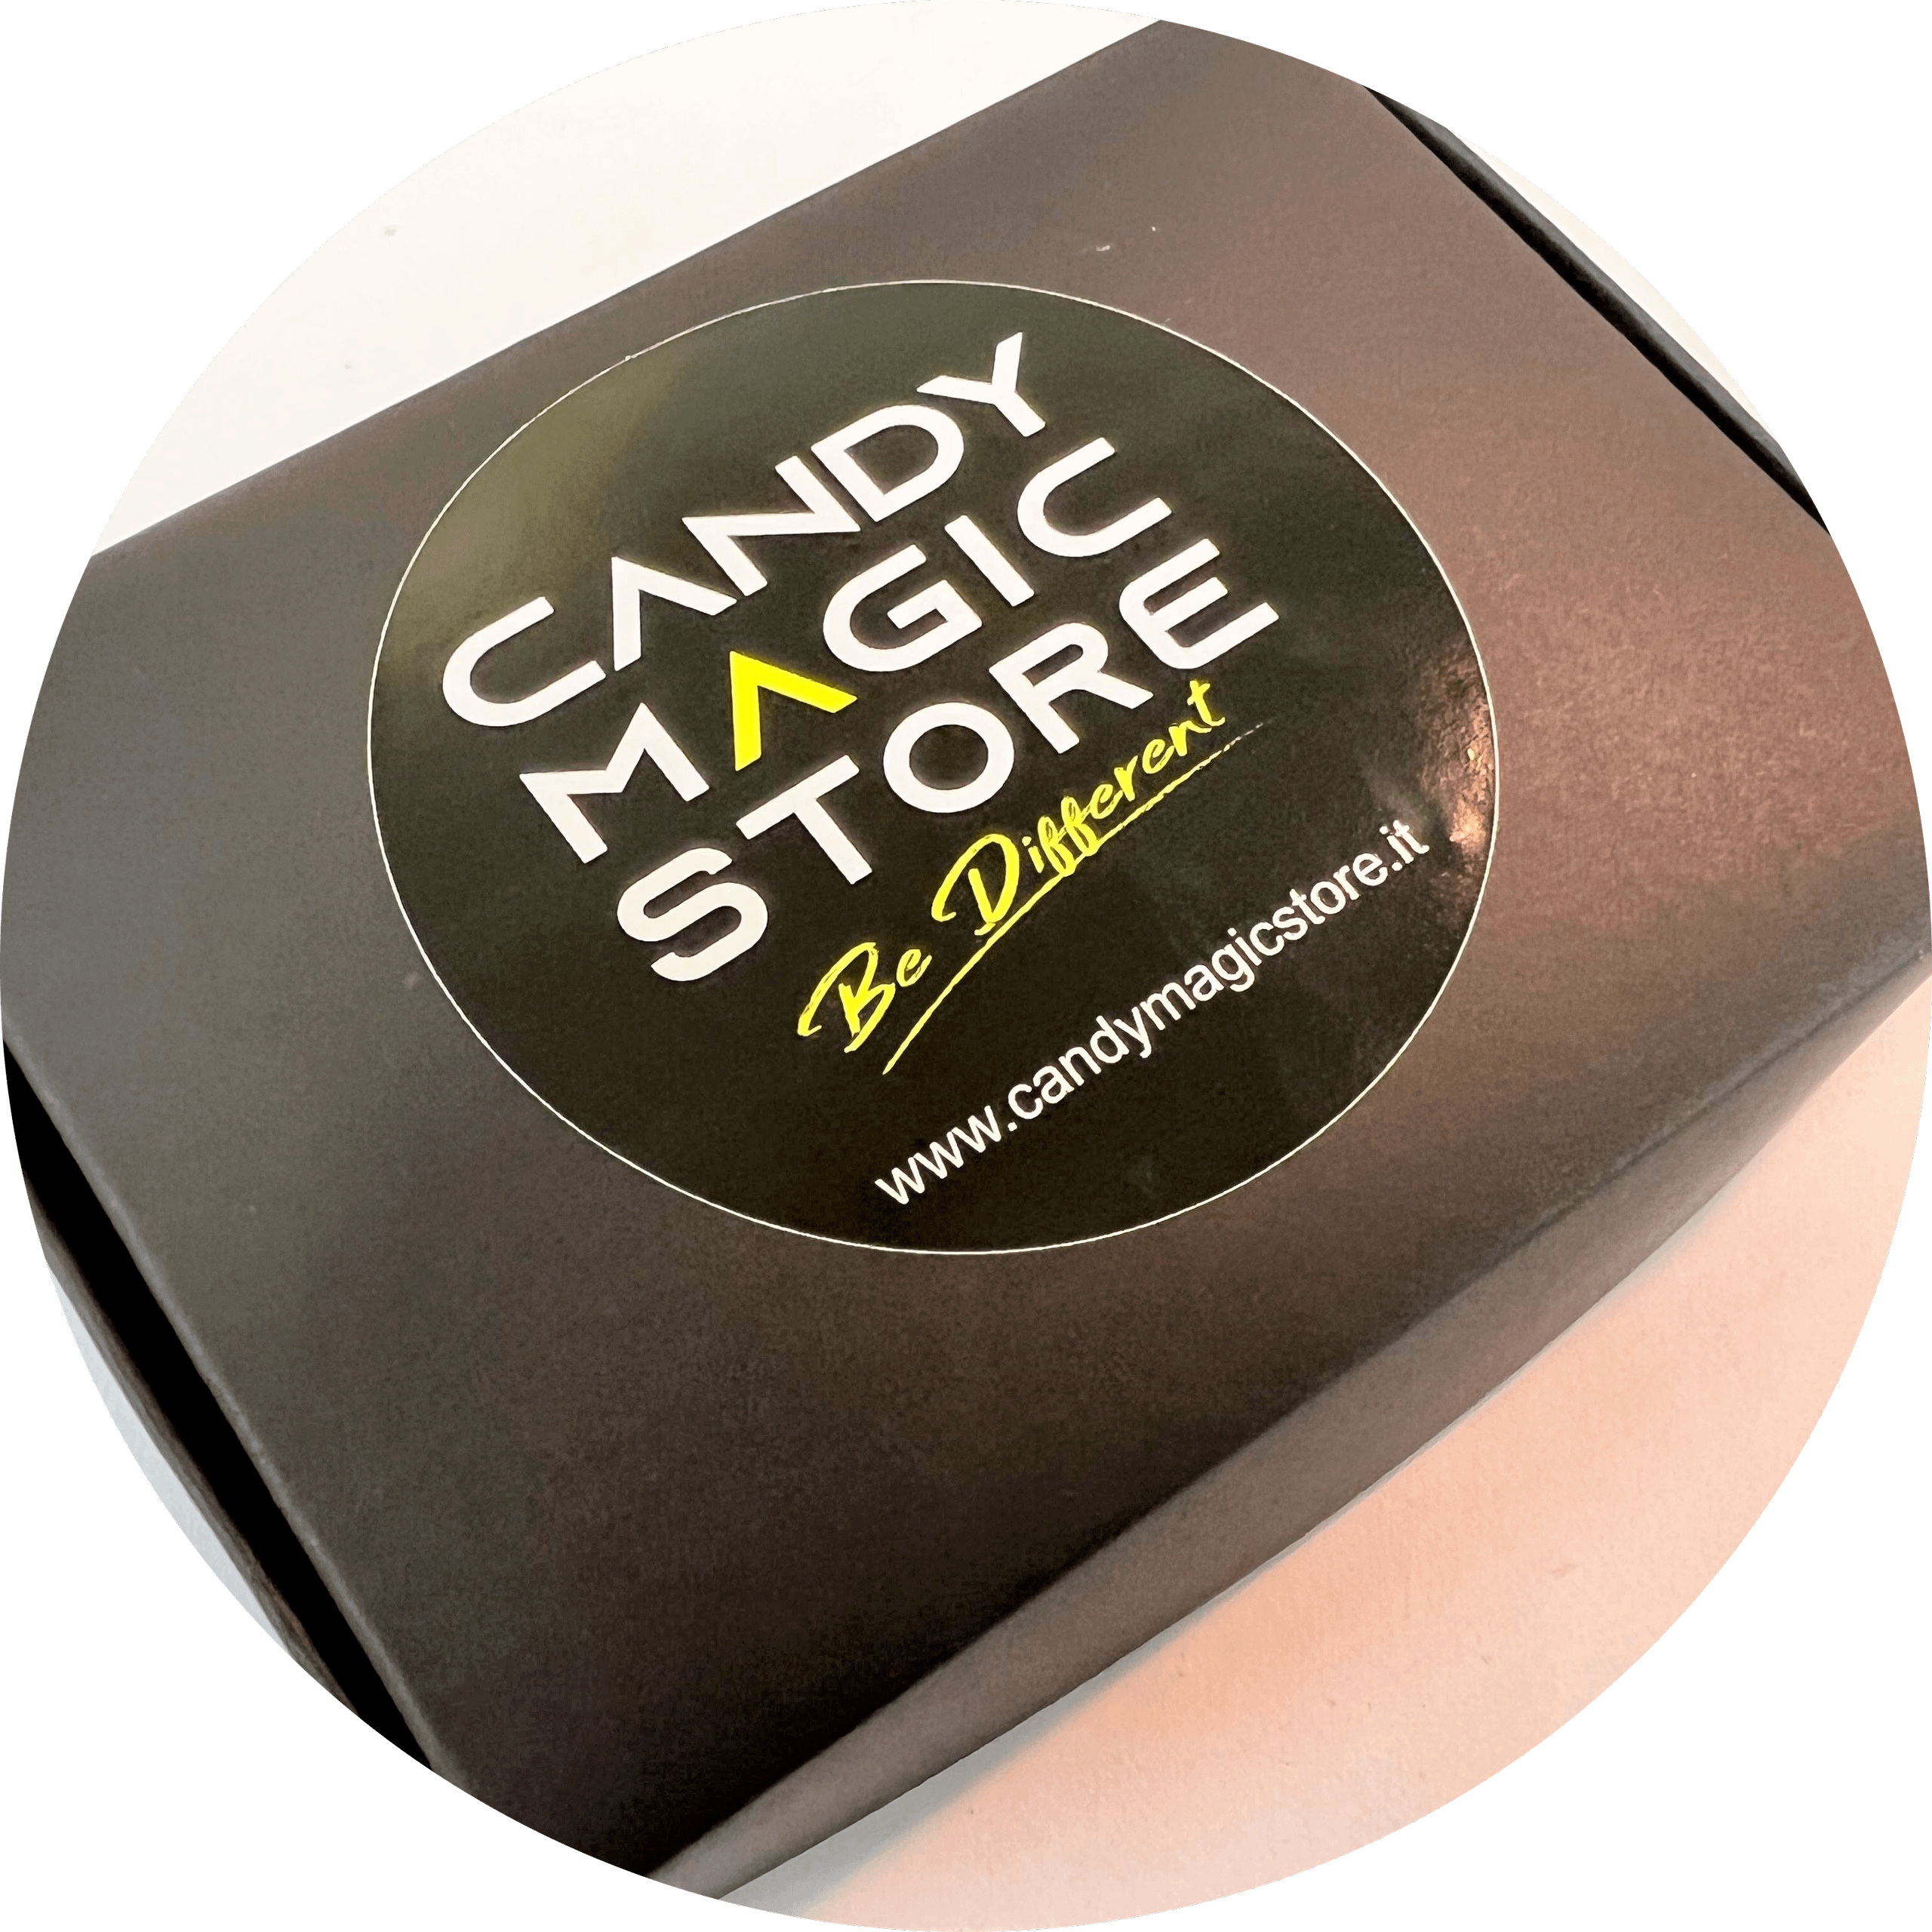 Candy Magic Box